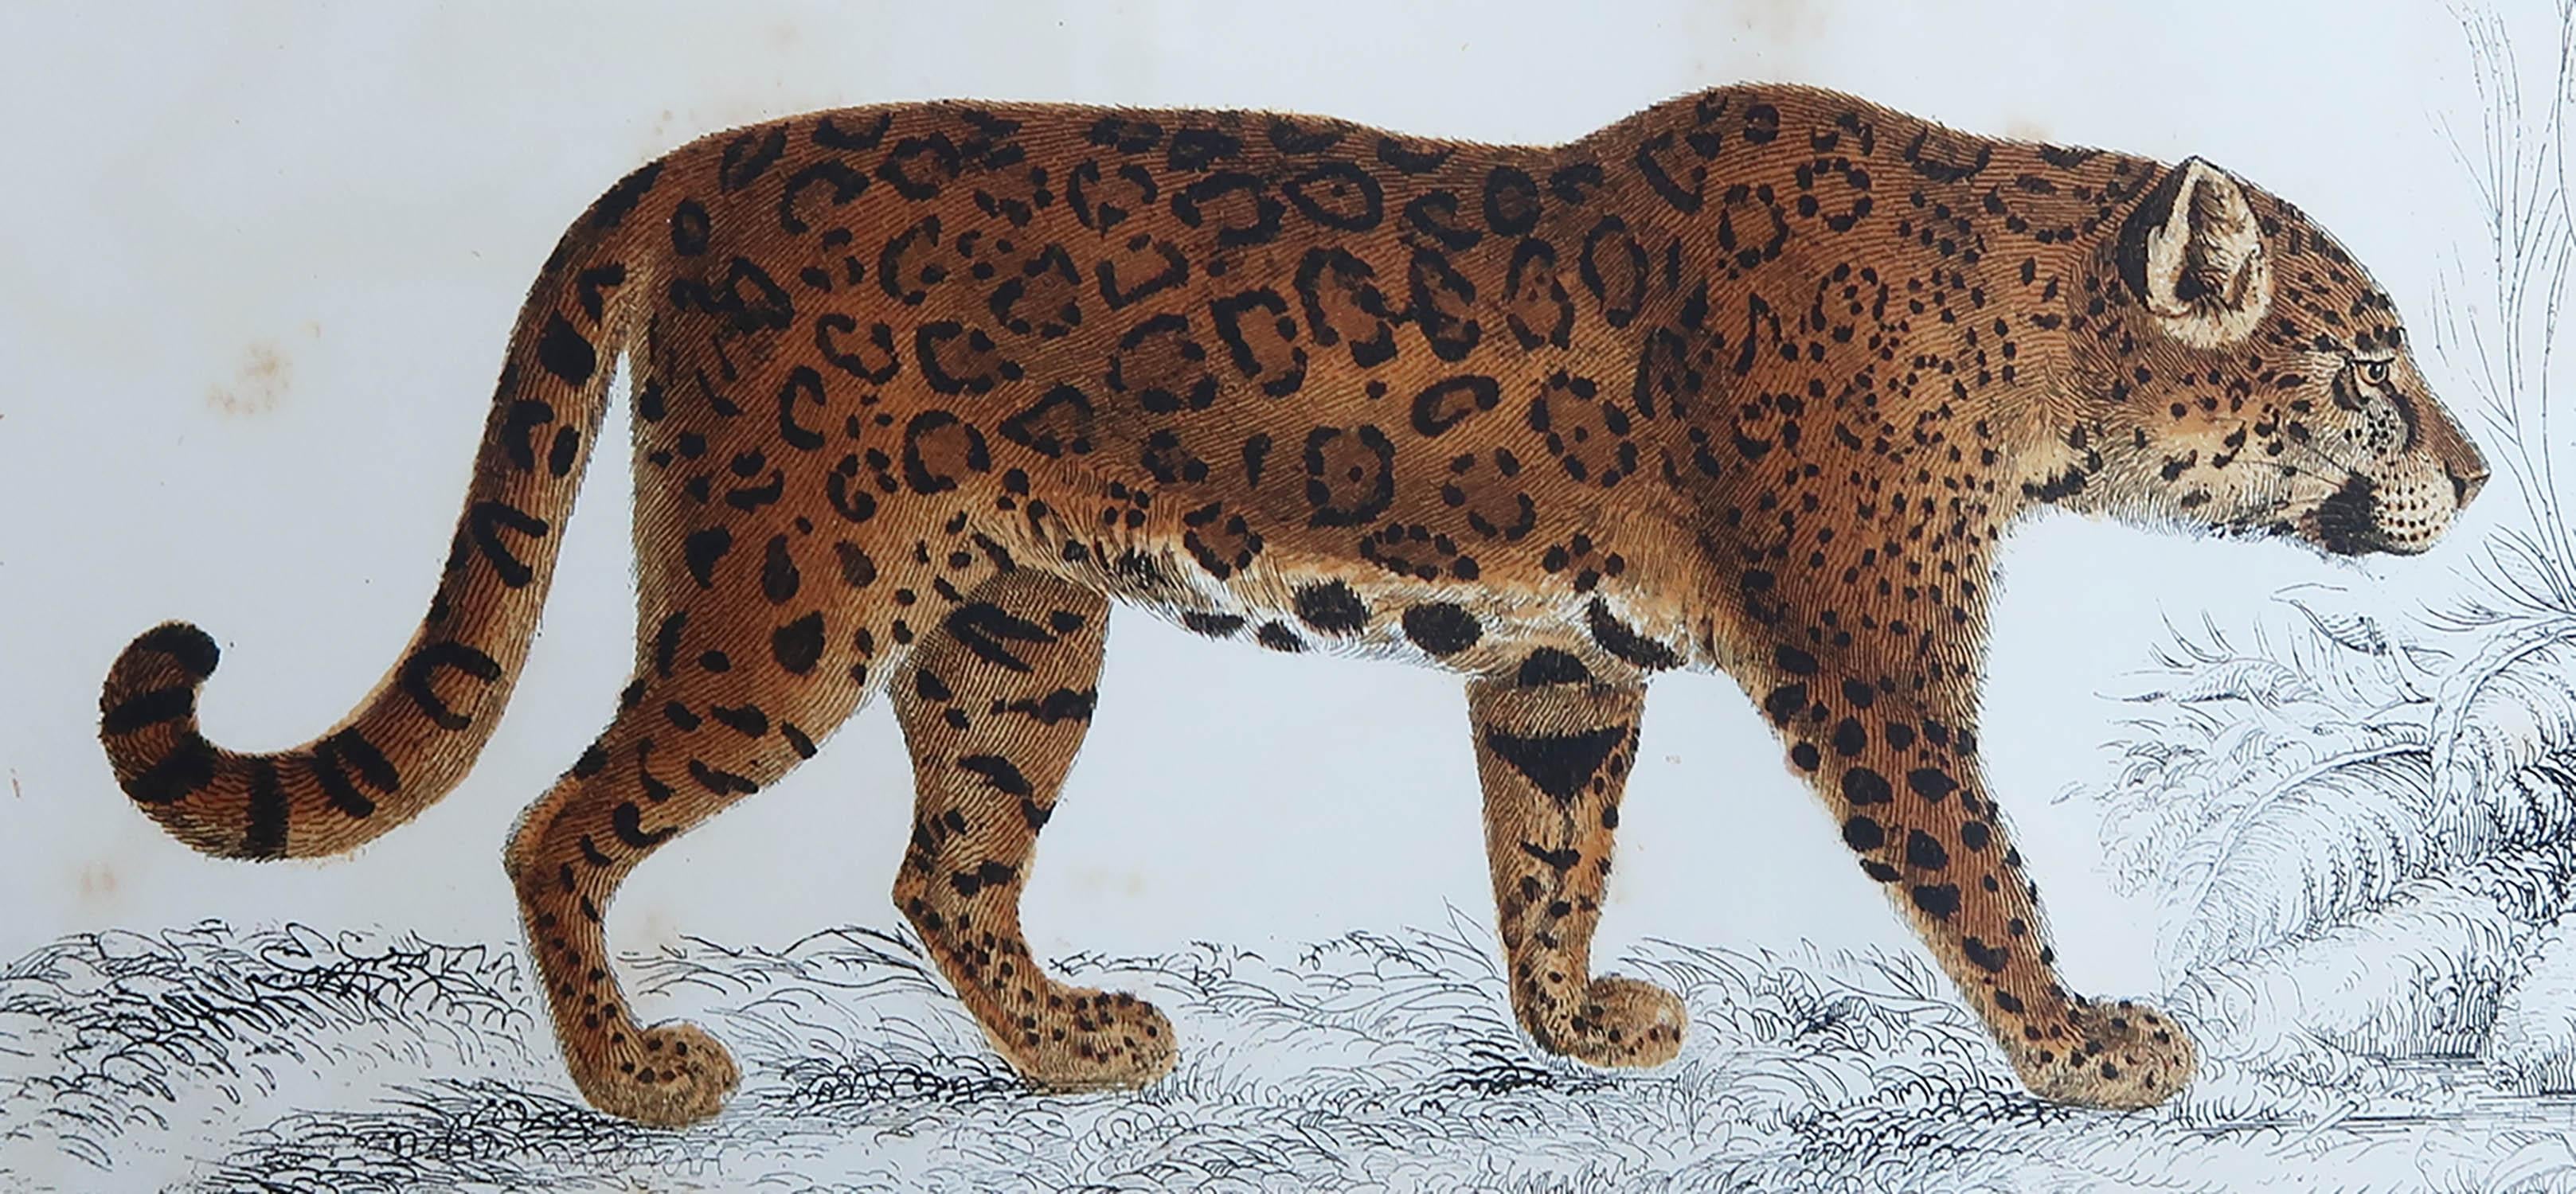 Tolles Bild eines Jaguars.

Ungerahmt. So haben Sie die Möglichkeit, Ihre eigene Auswahl an Rahmen zu treffen.

Lithographie nach Cpt. Braun mit Original-Handkolorit.

Veröffentlicht: 1847.





